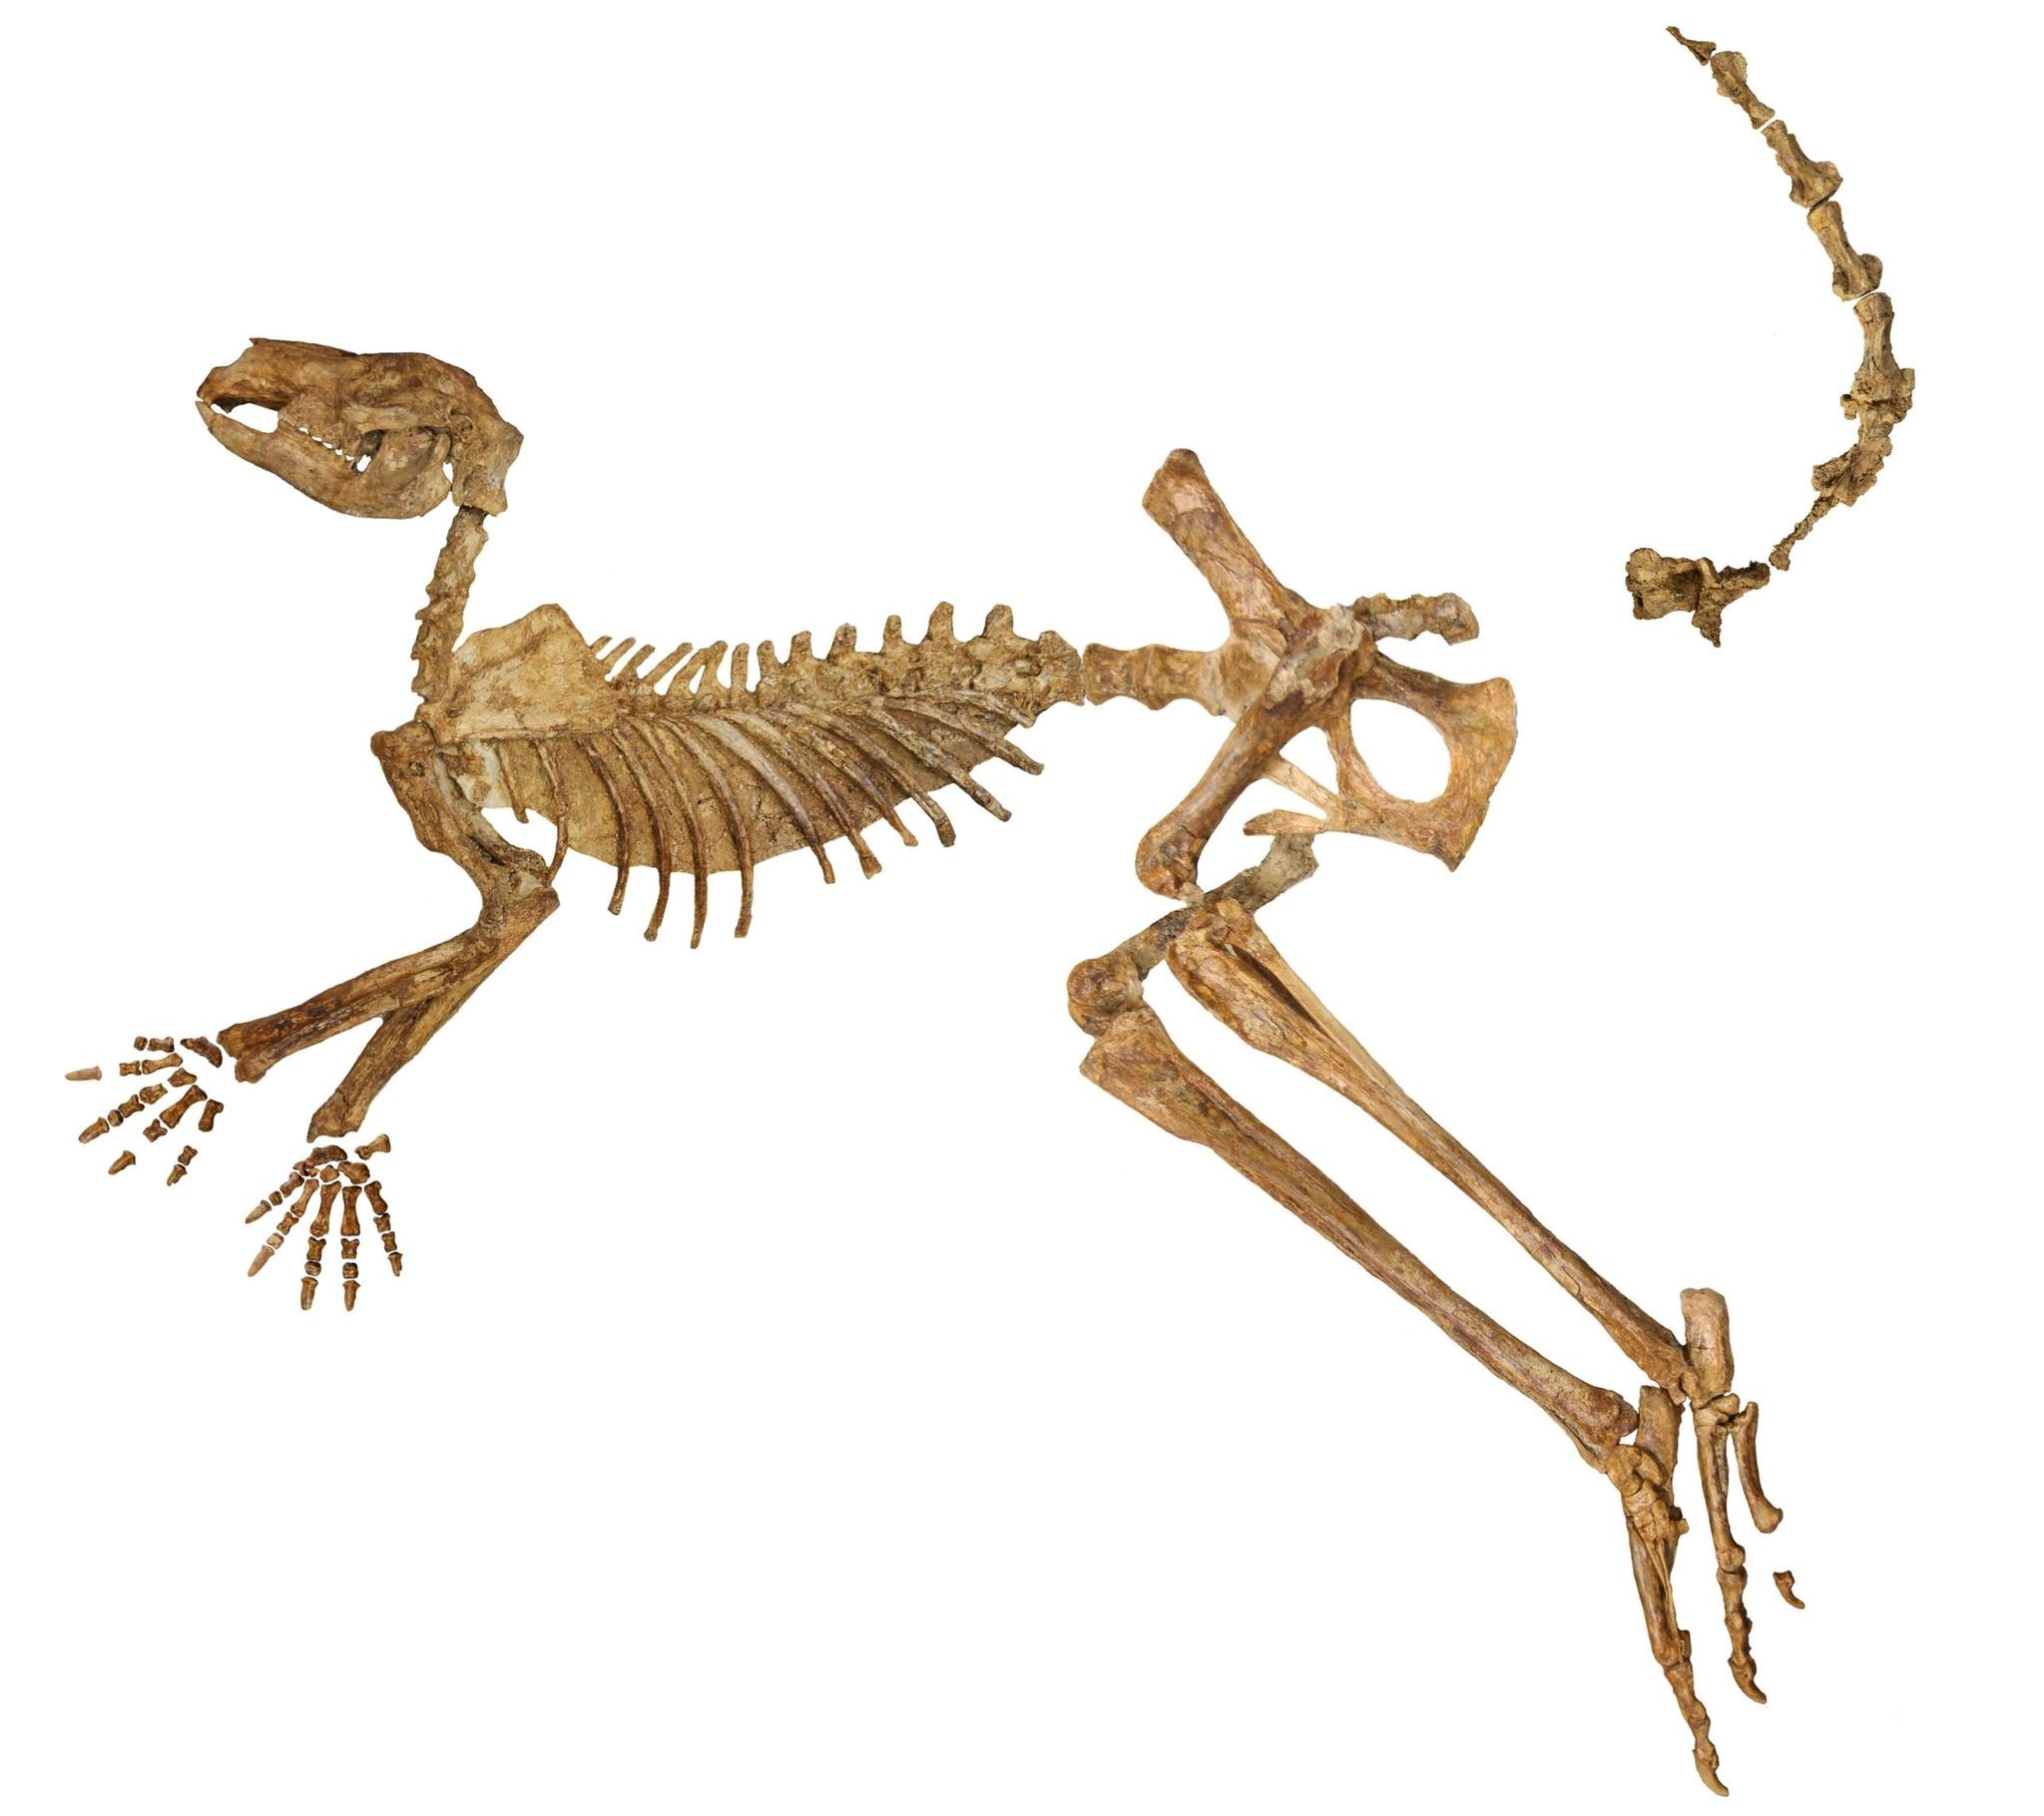 Callabonna-järvestä löytyneen sukupuuttoon kuolleen jättiläiskenguru Protemnodon viatorin lähes täydellinen fossiilinen luuranko, josta puuttuu vain muutama luu kädestä, jalasta ja hännästä.